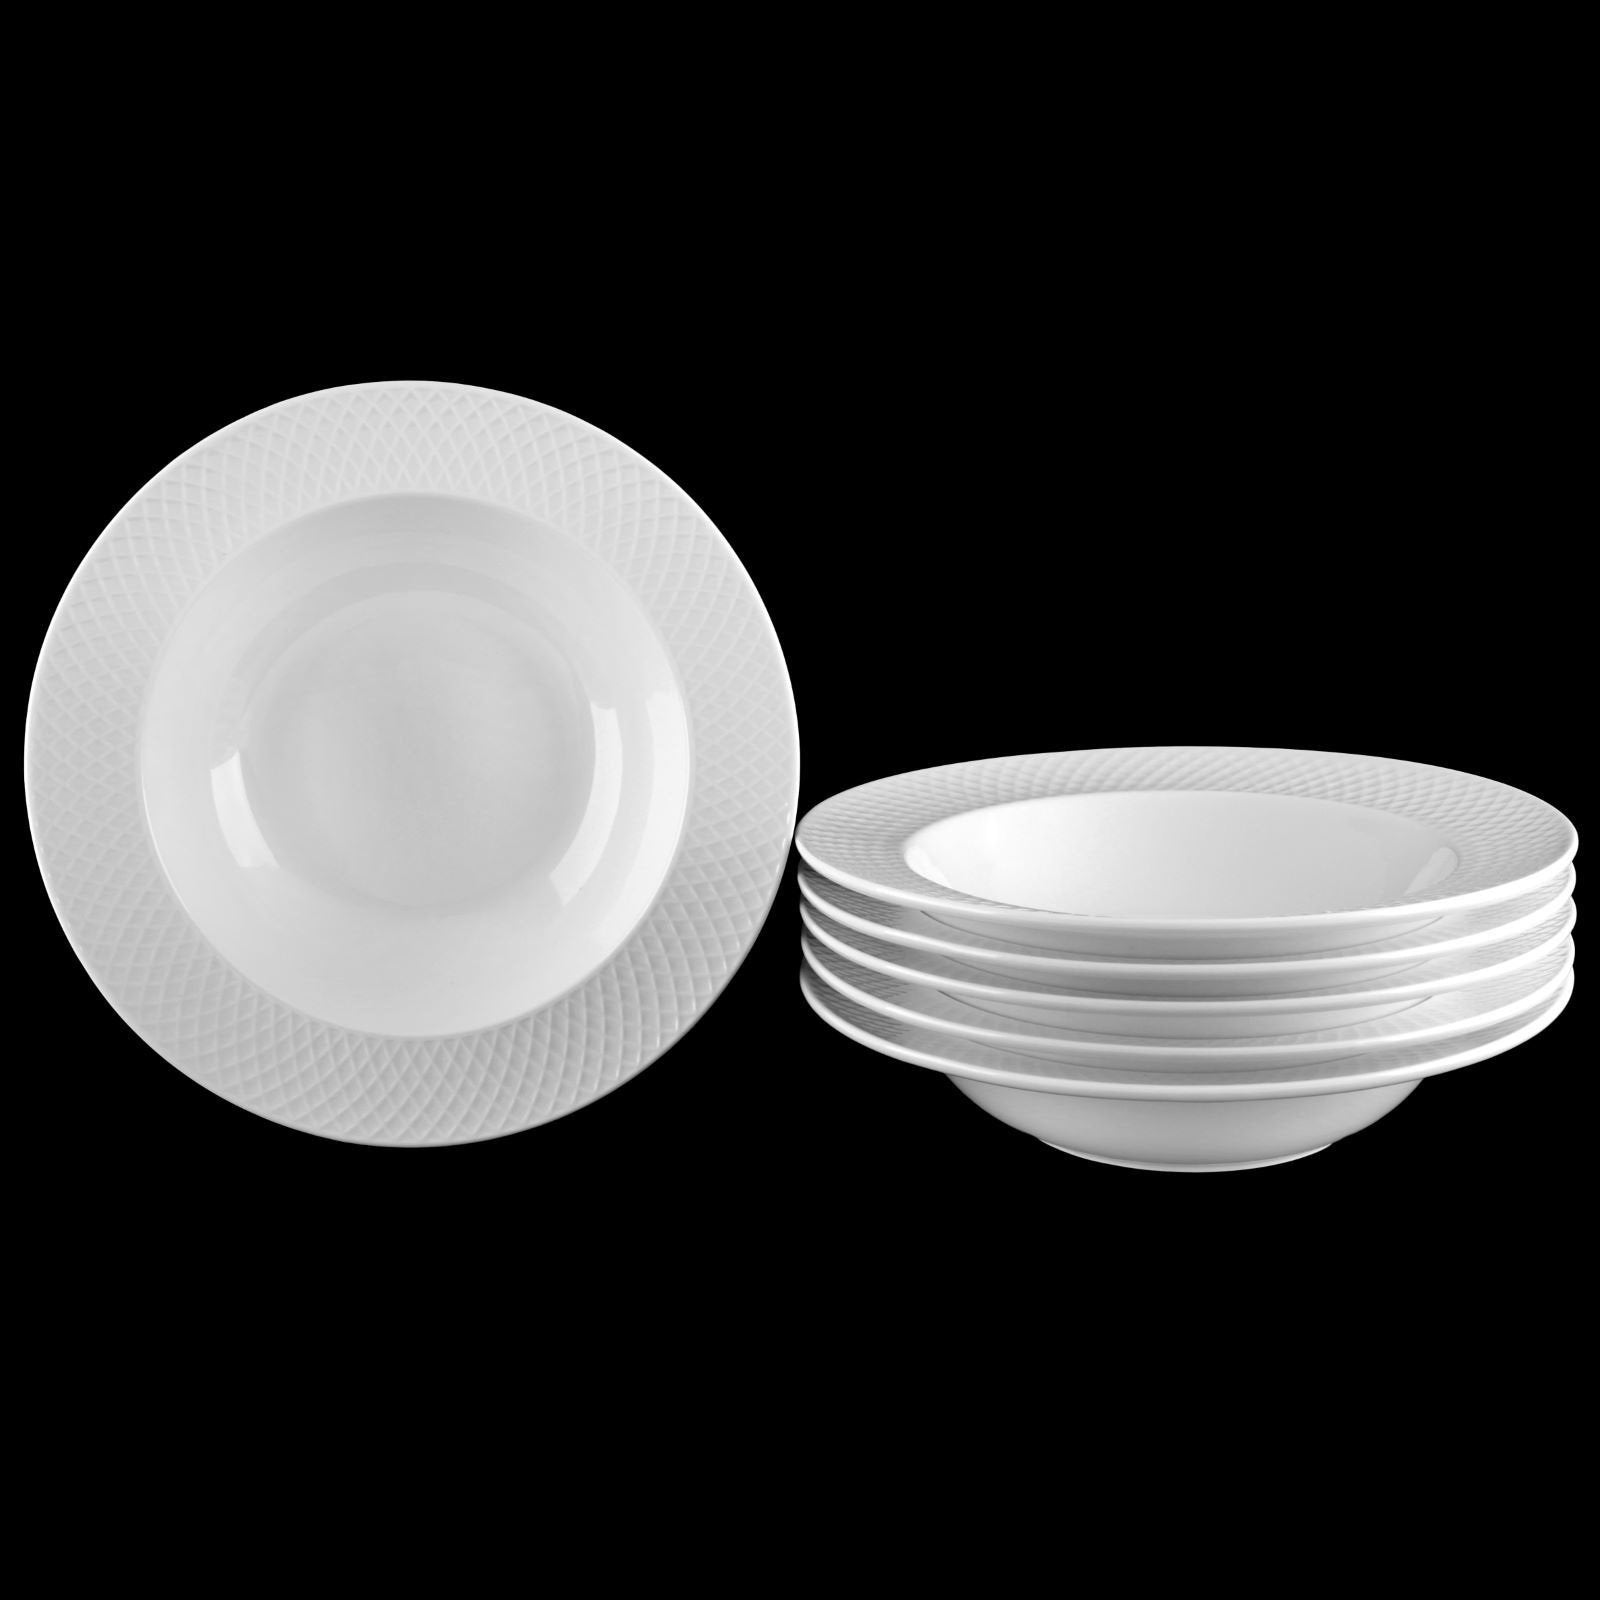 Wilmax WL-880100/A 8-Inch Julia Round White Porcelain Dessert Plate, 6/CS